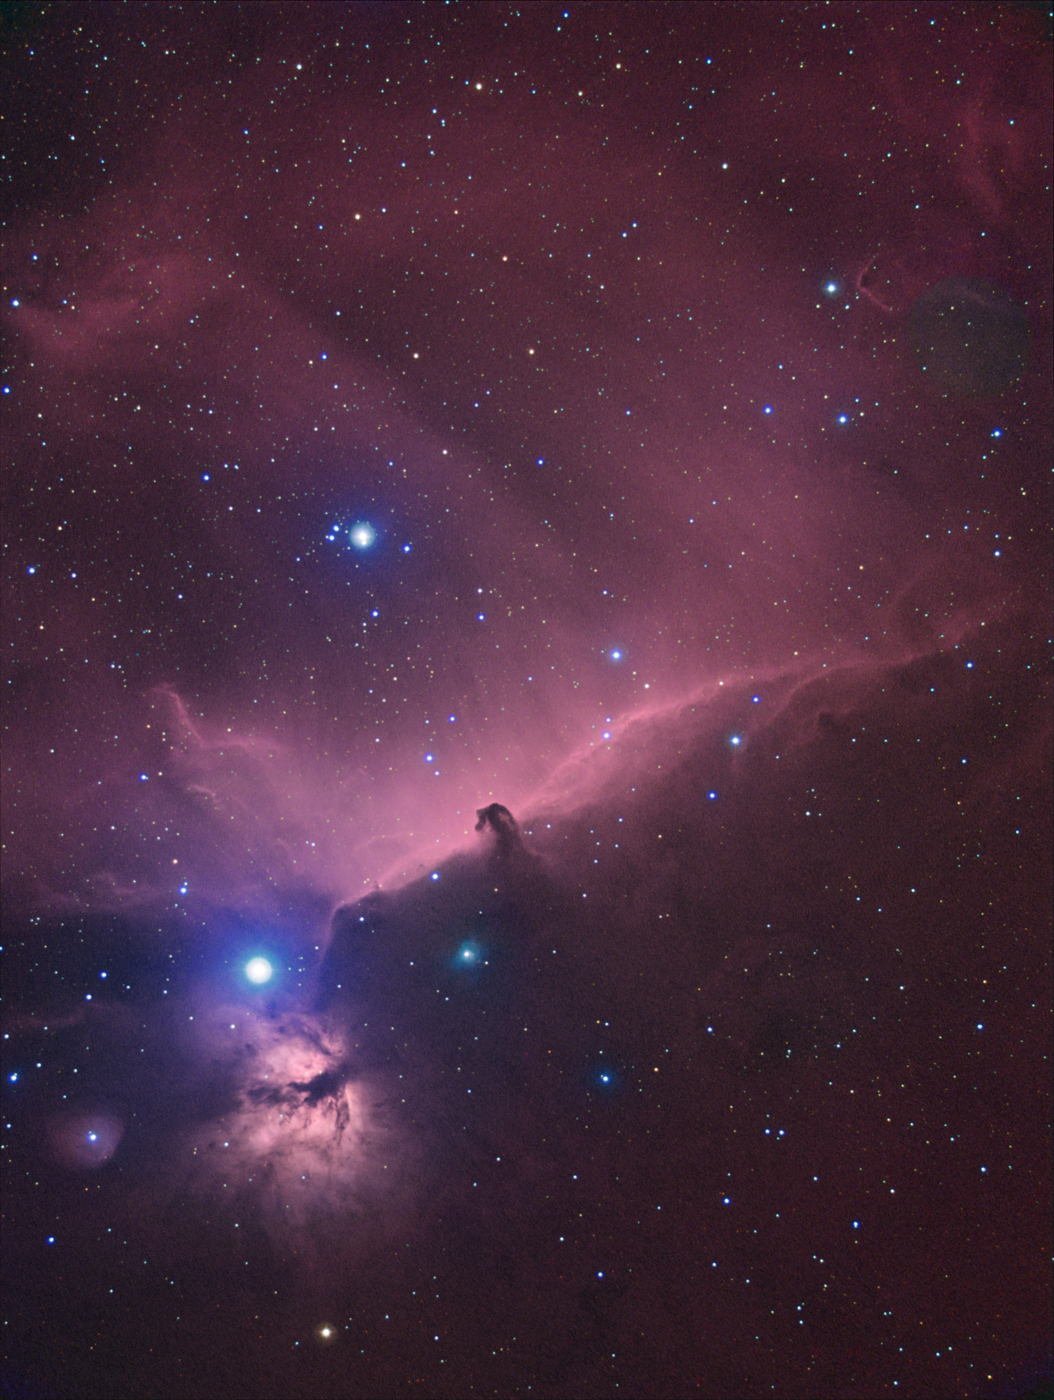 20111002-ngc2024.jpg : IC434, NGC2023